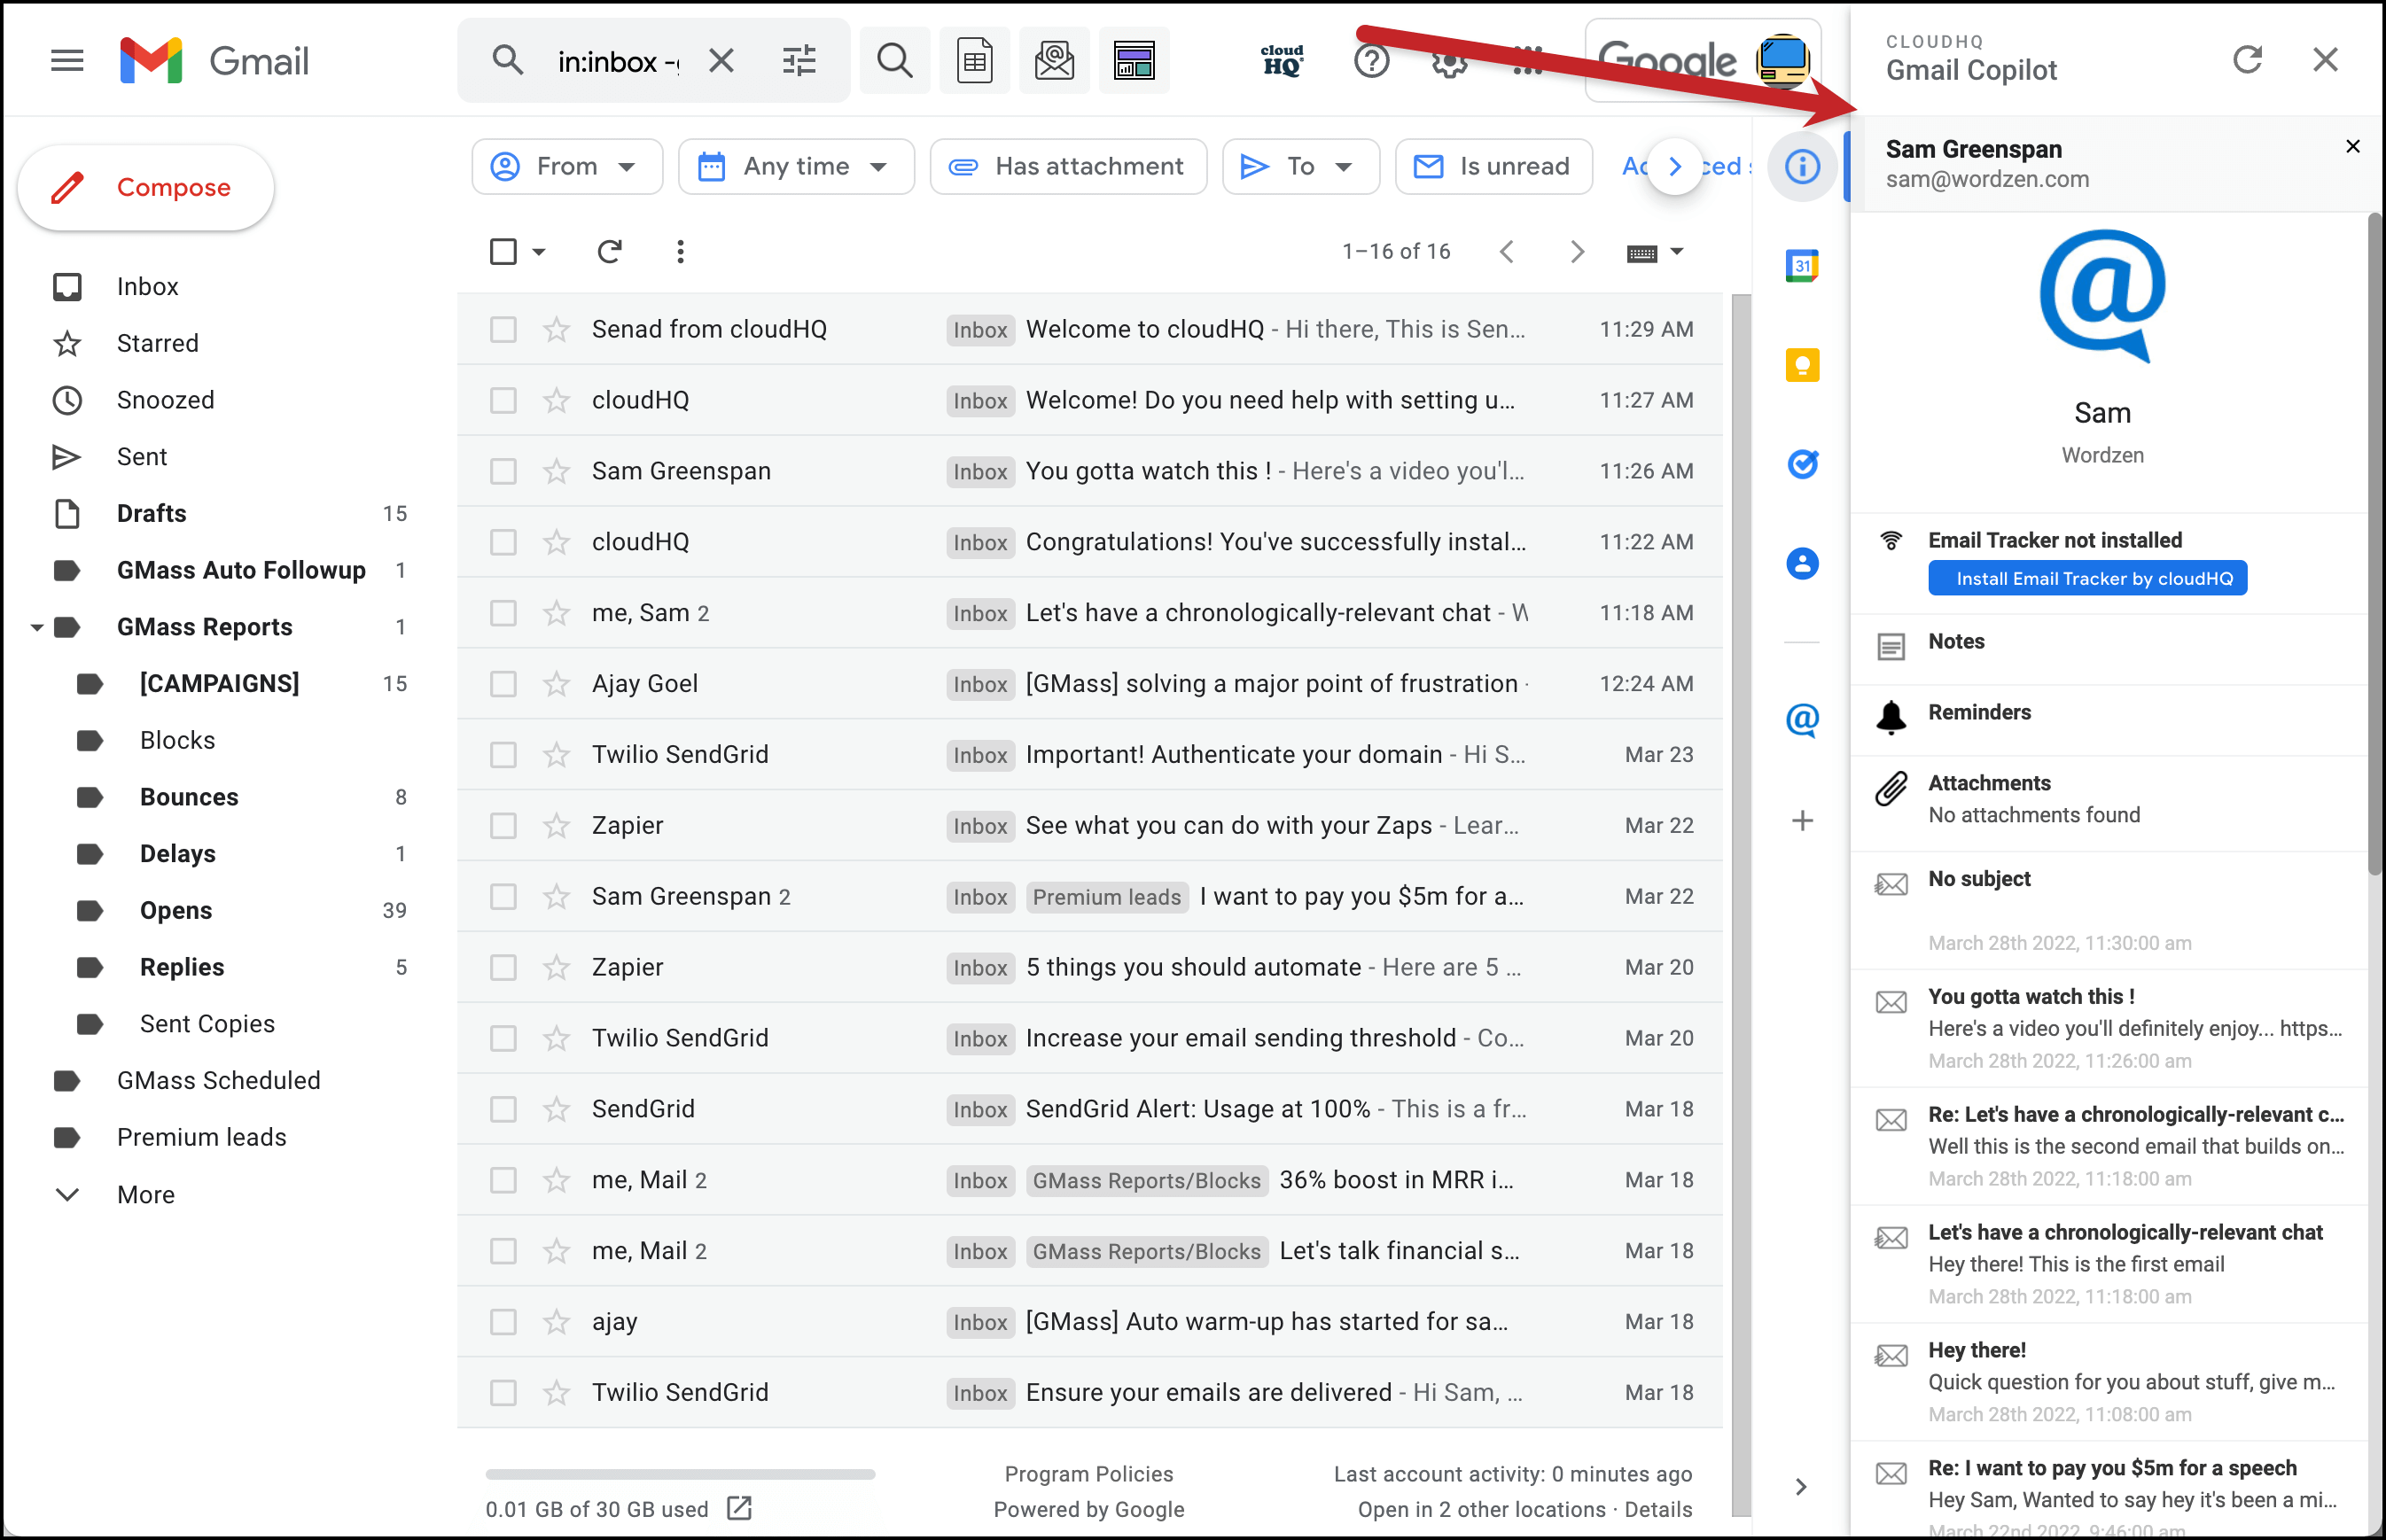 Gmail Copilot shares contact info